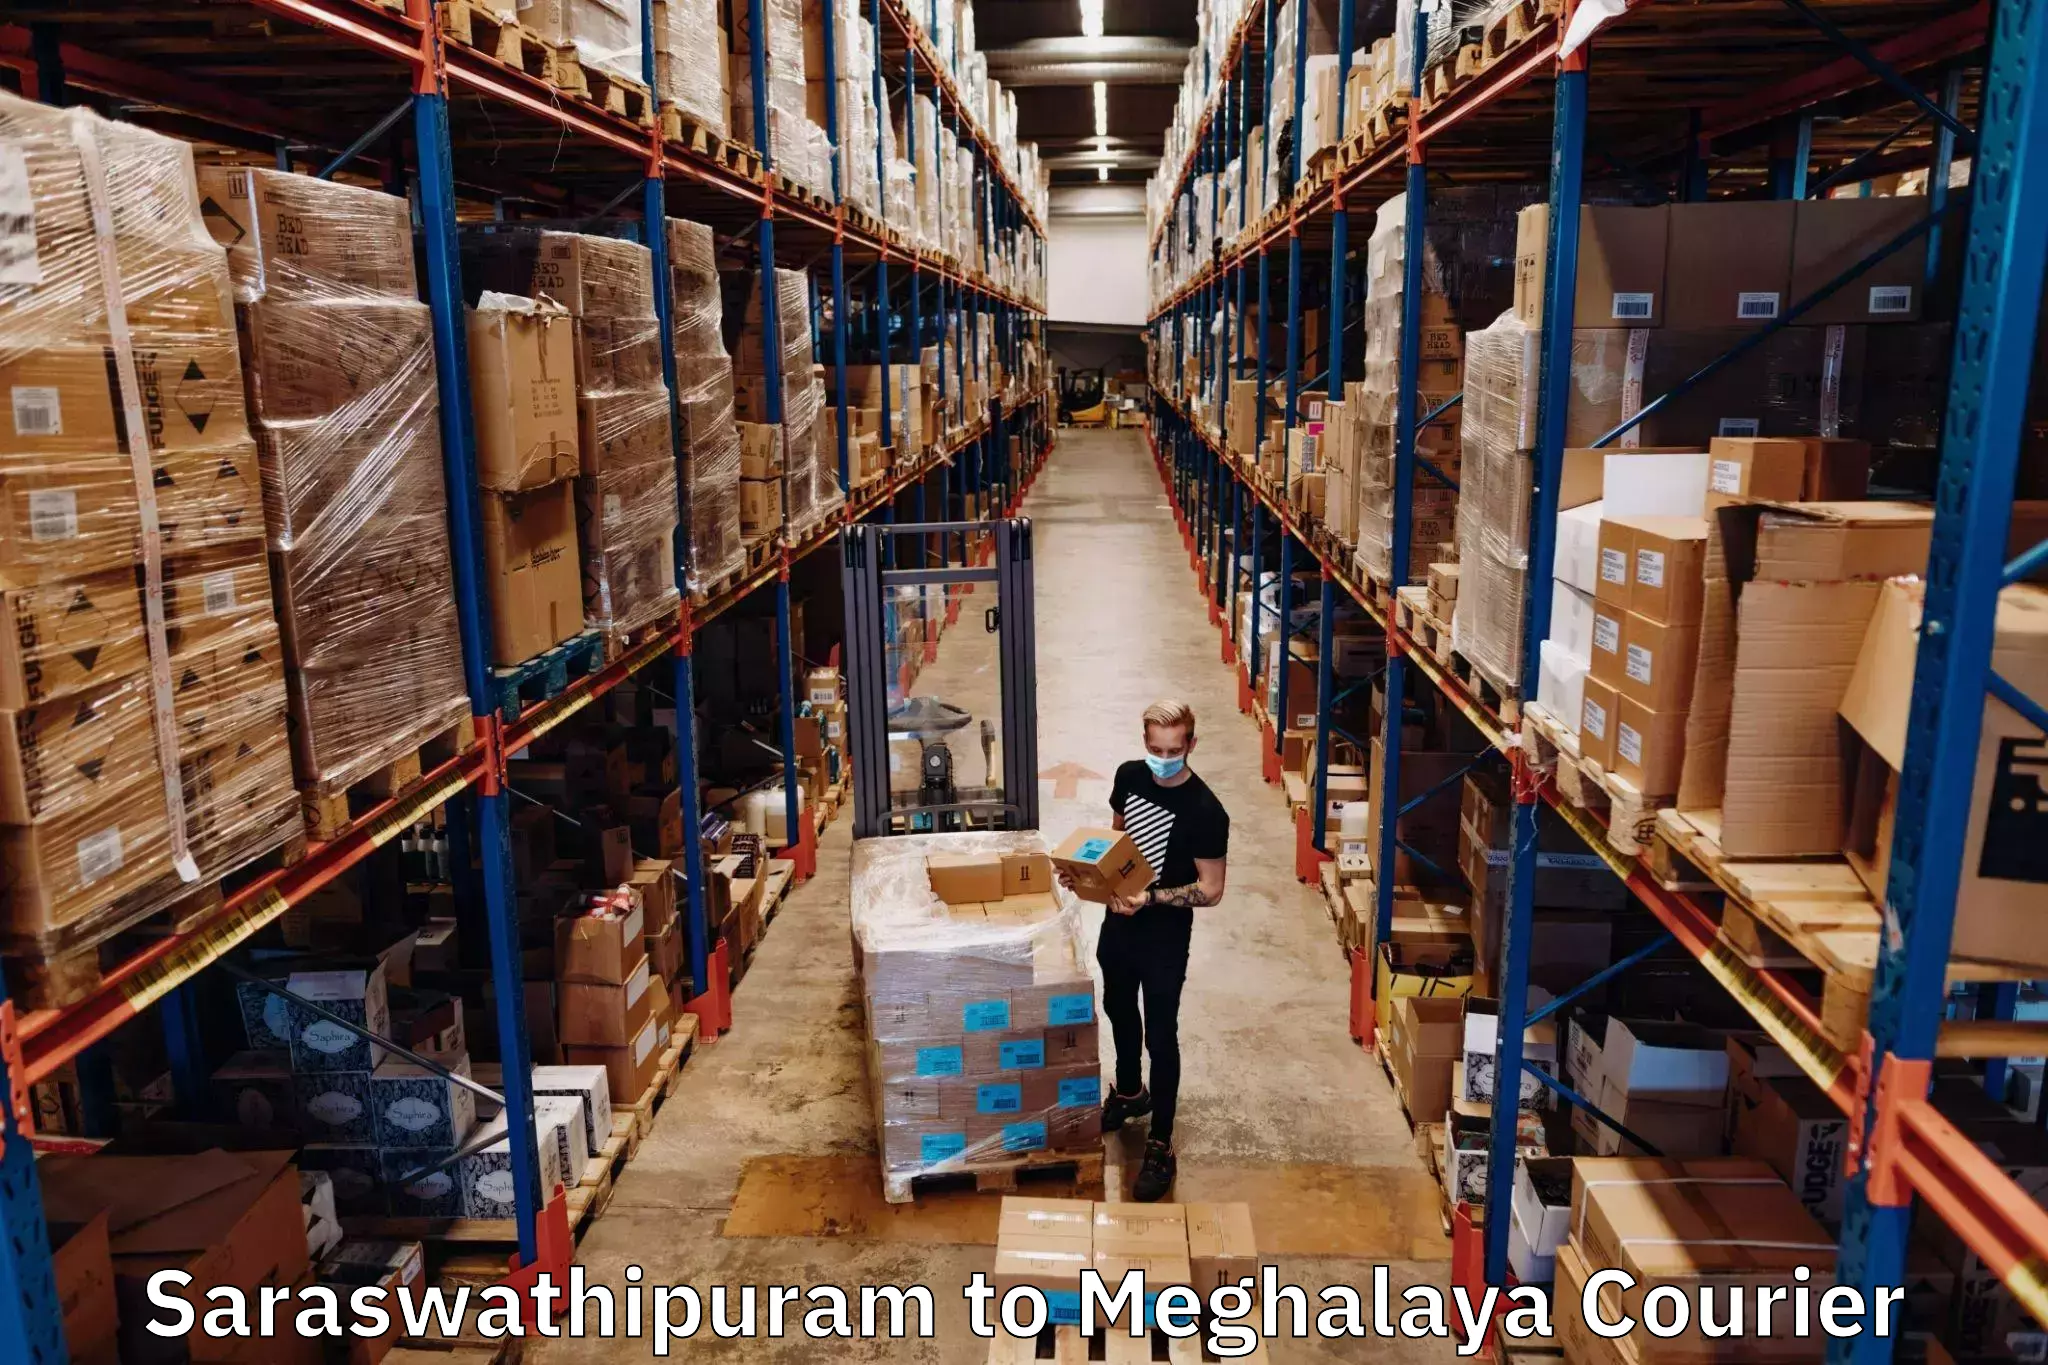 State-of-the-art courier technology Saraswathipuram to Shillong